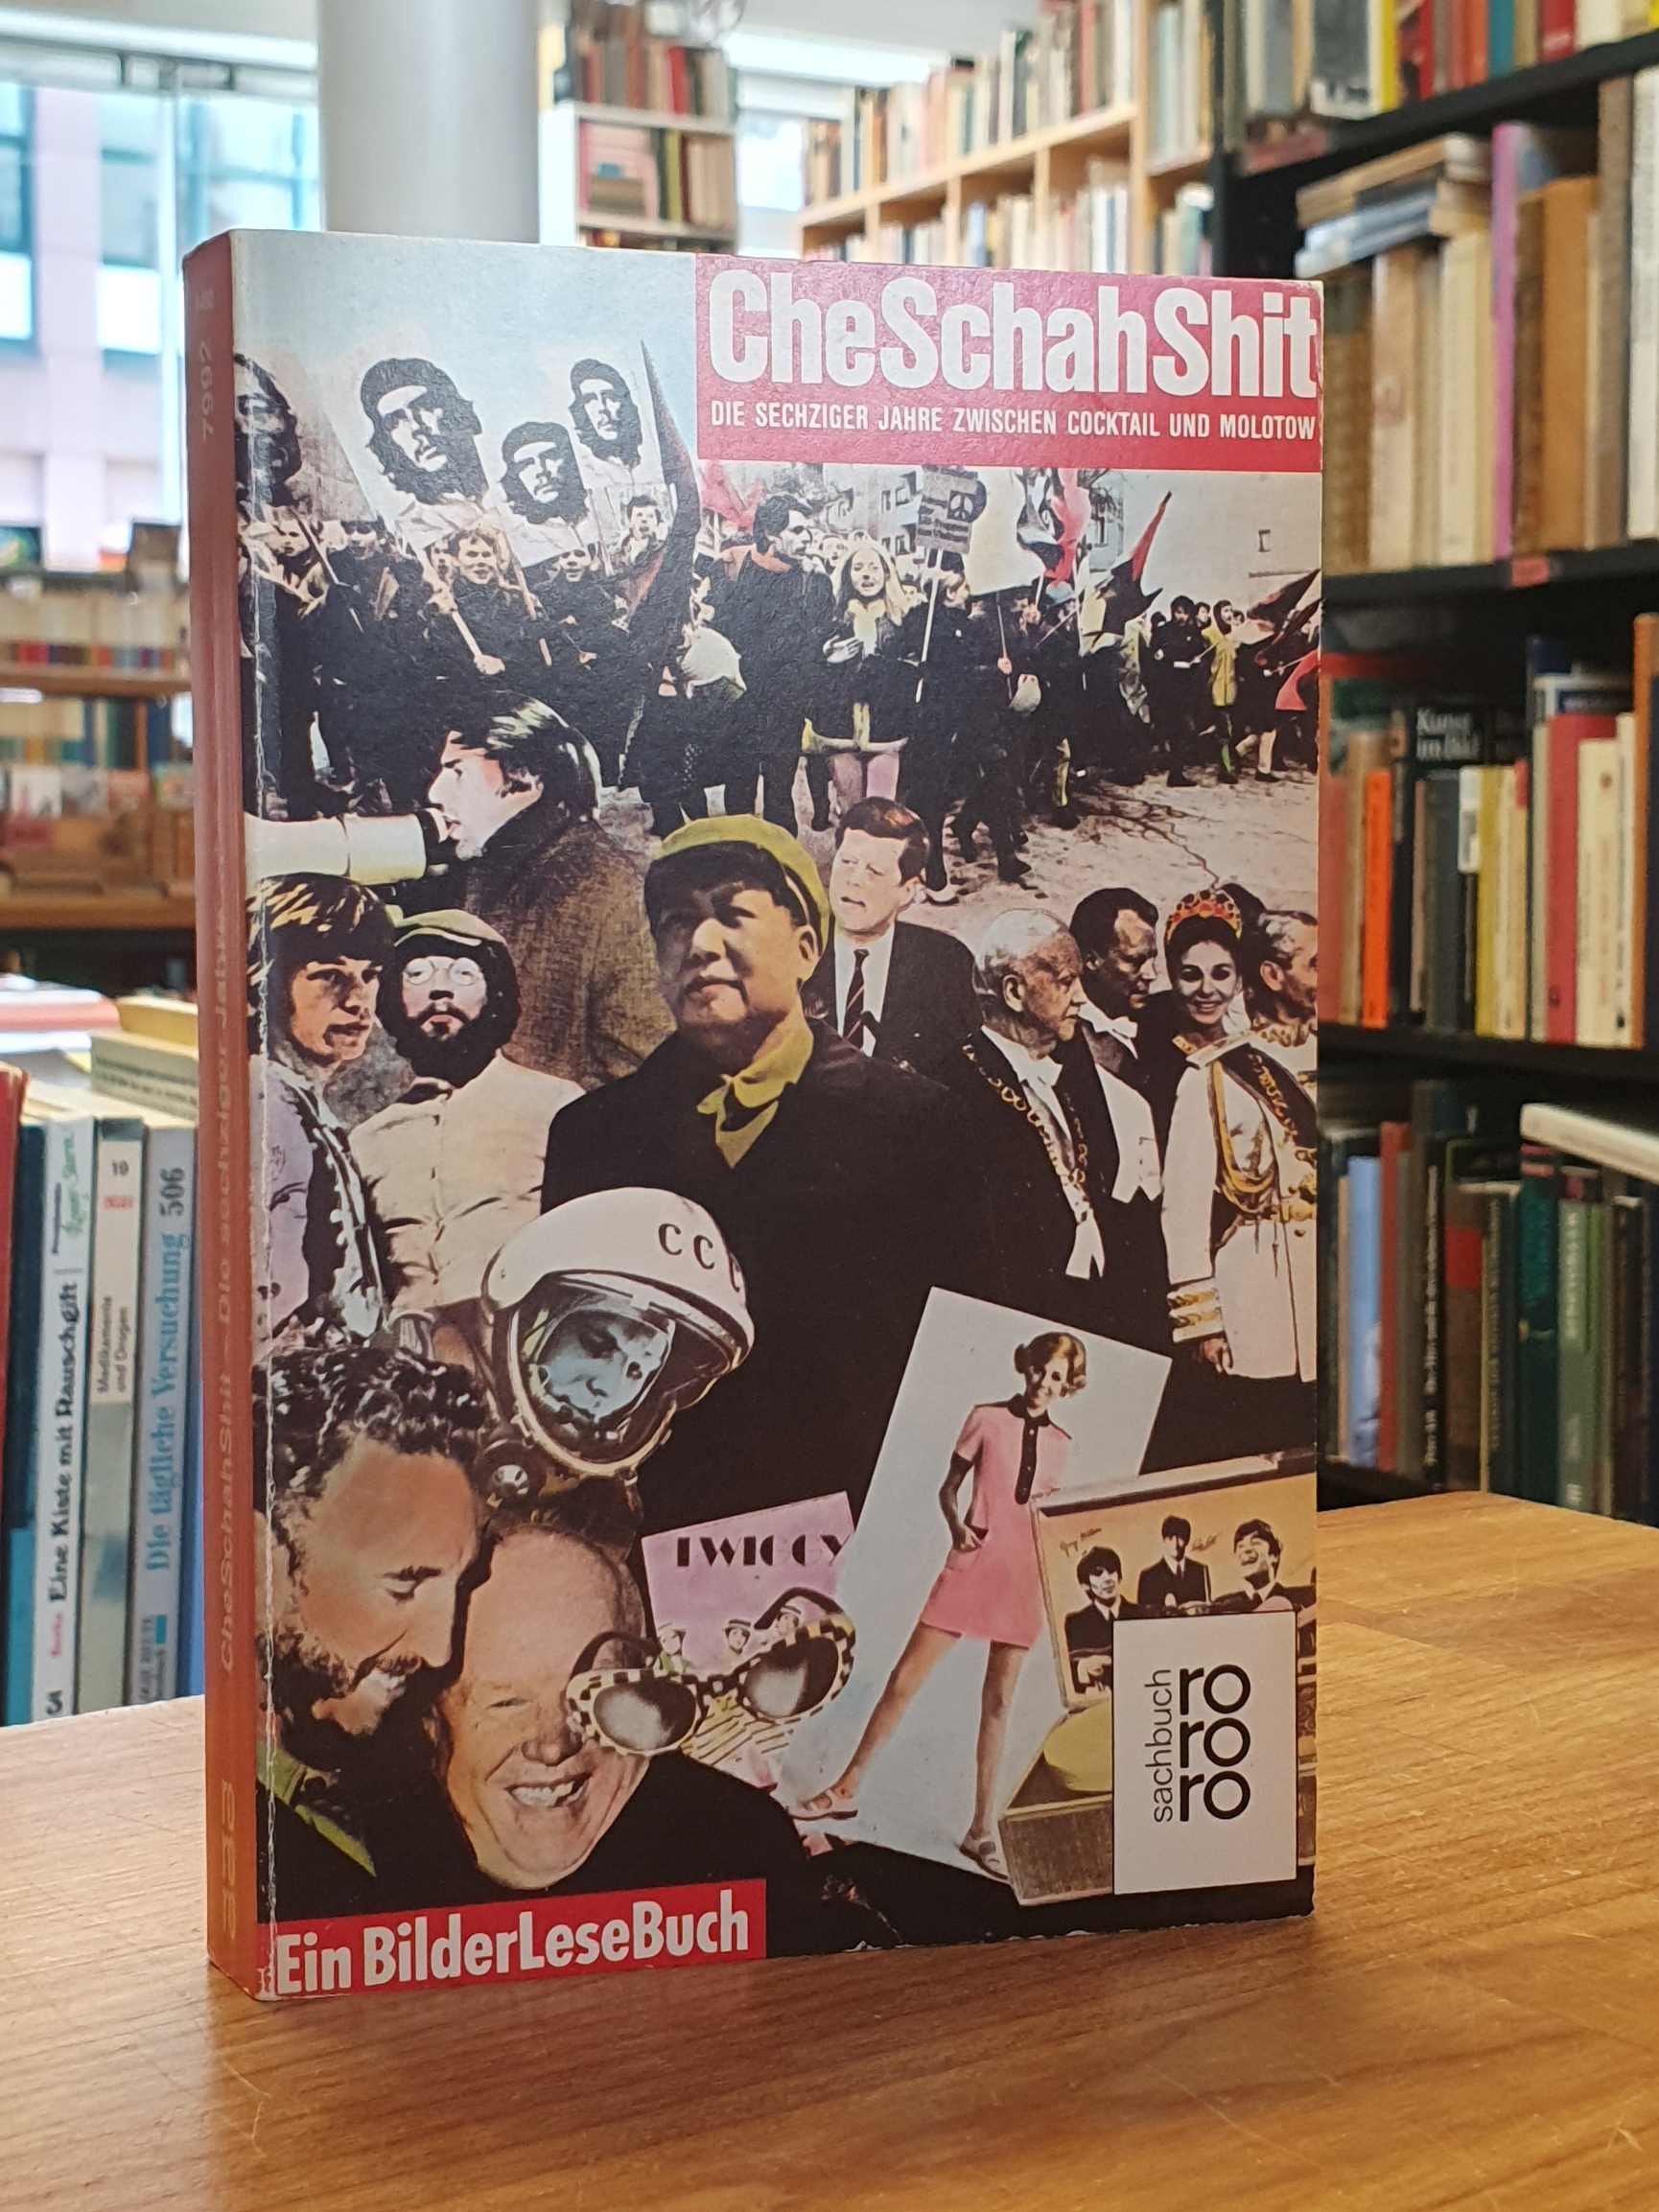 Che-Schah-Shit, Die 60er Jahre zwischen Cocktail und Molotow - Ein Bilder-Lese-Buch, - Siepmann, Eckhard / Irene Lusk / u.a.